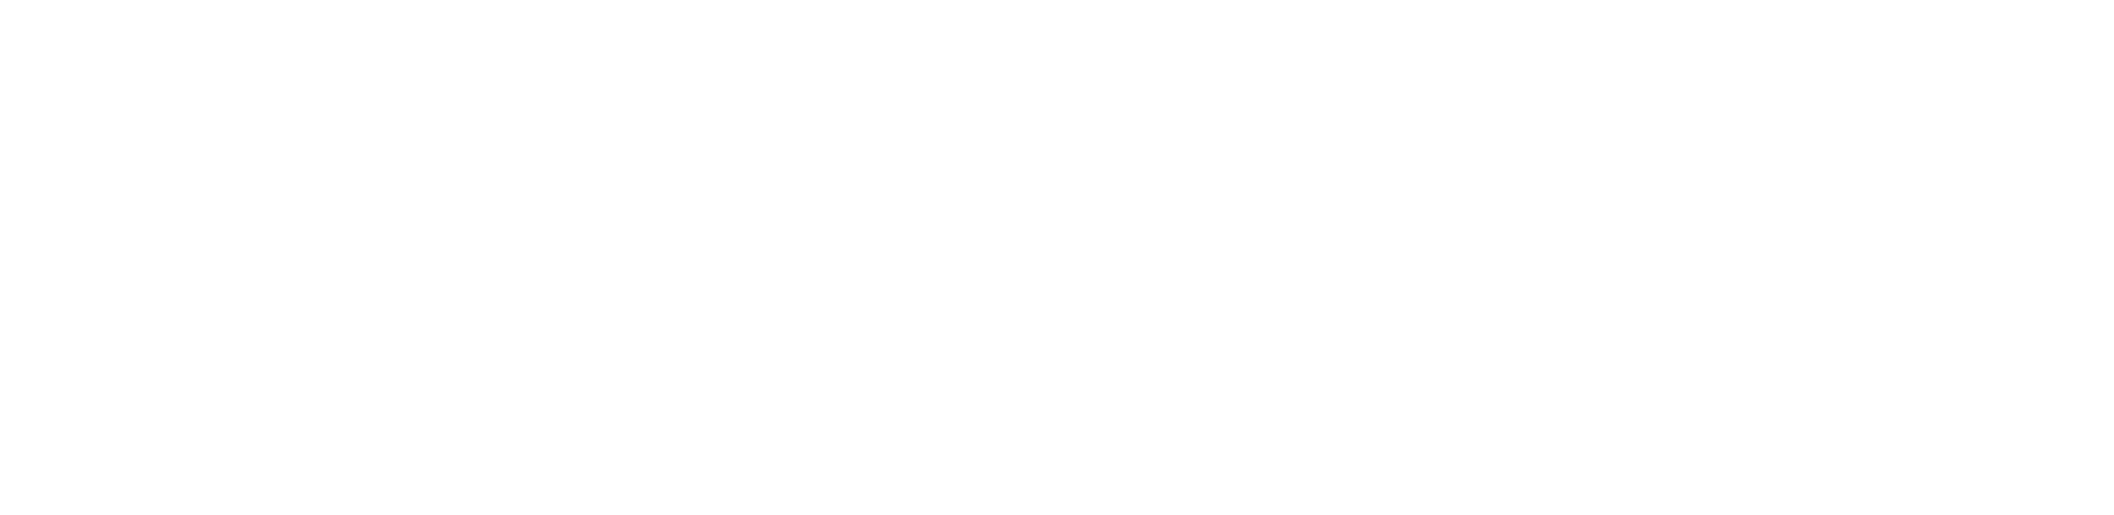 Academy of Therapy Wisdom